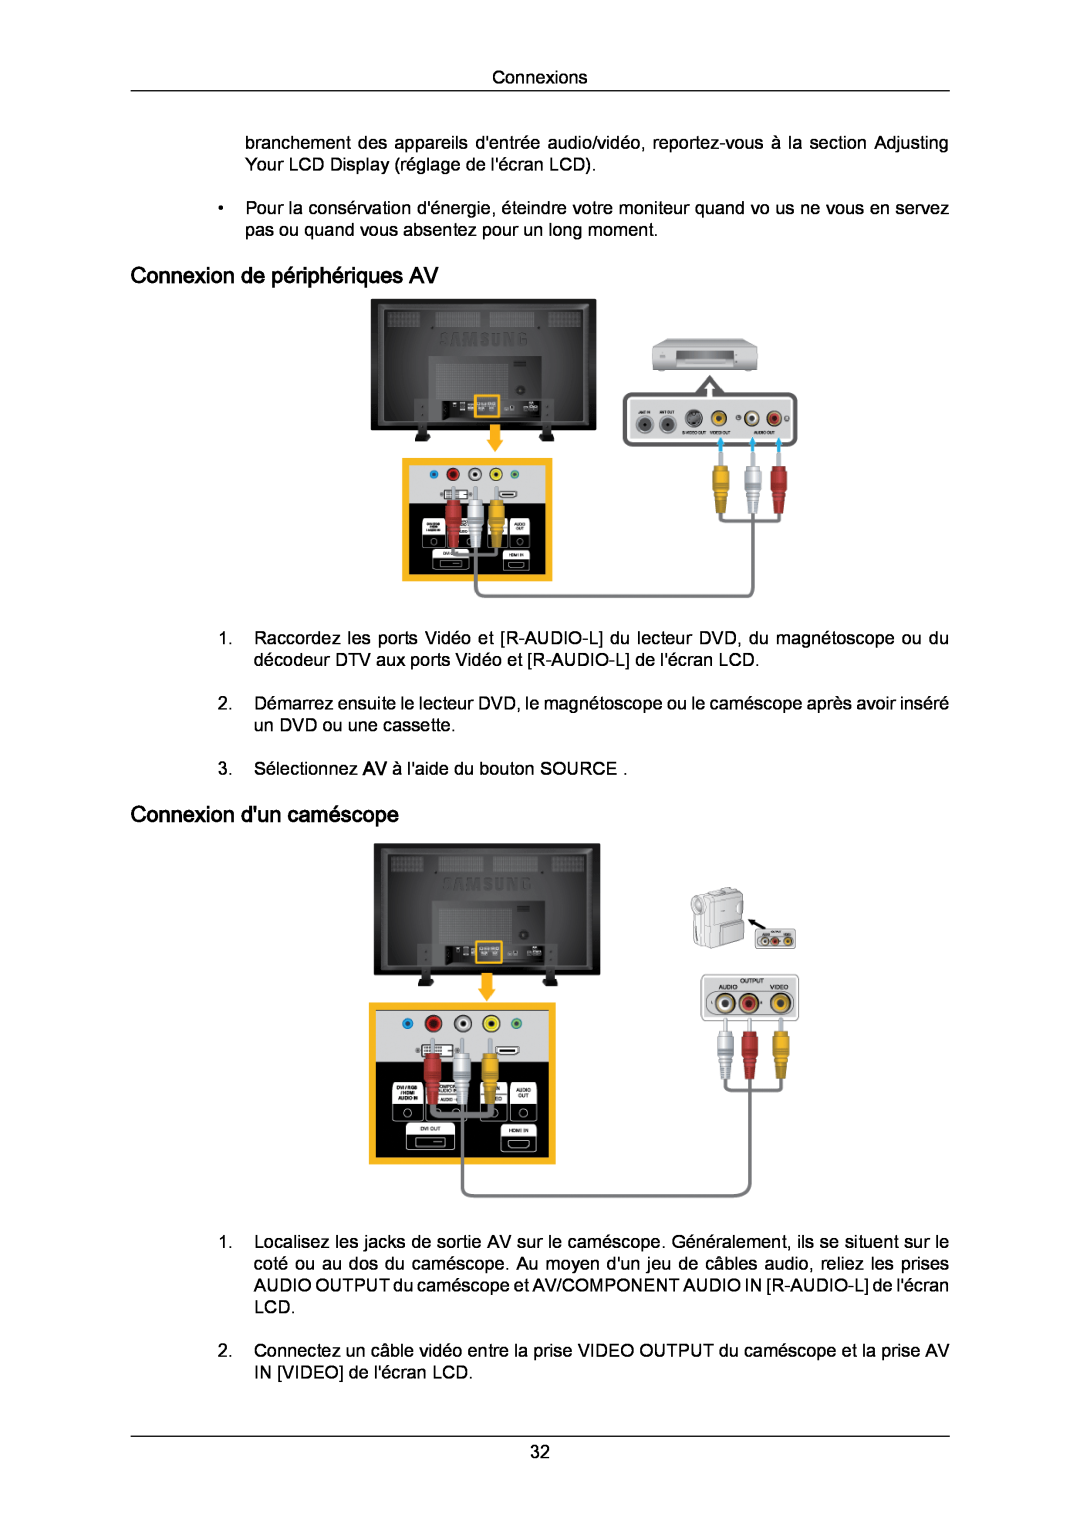 Samsung LH70TCUMBG/EN, LH82TCUMBG/EN, LH70TCSMBG/EN manual Connexion de périphériques AV, Connexion dun caméscope 